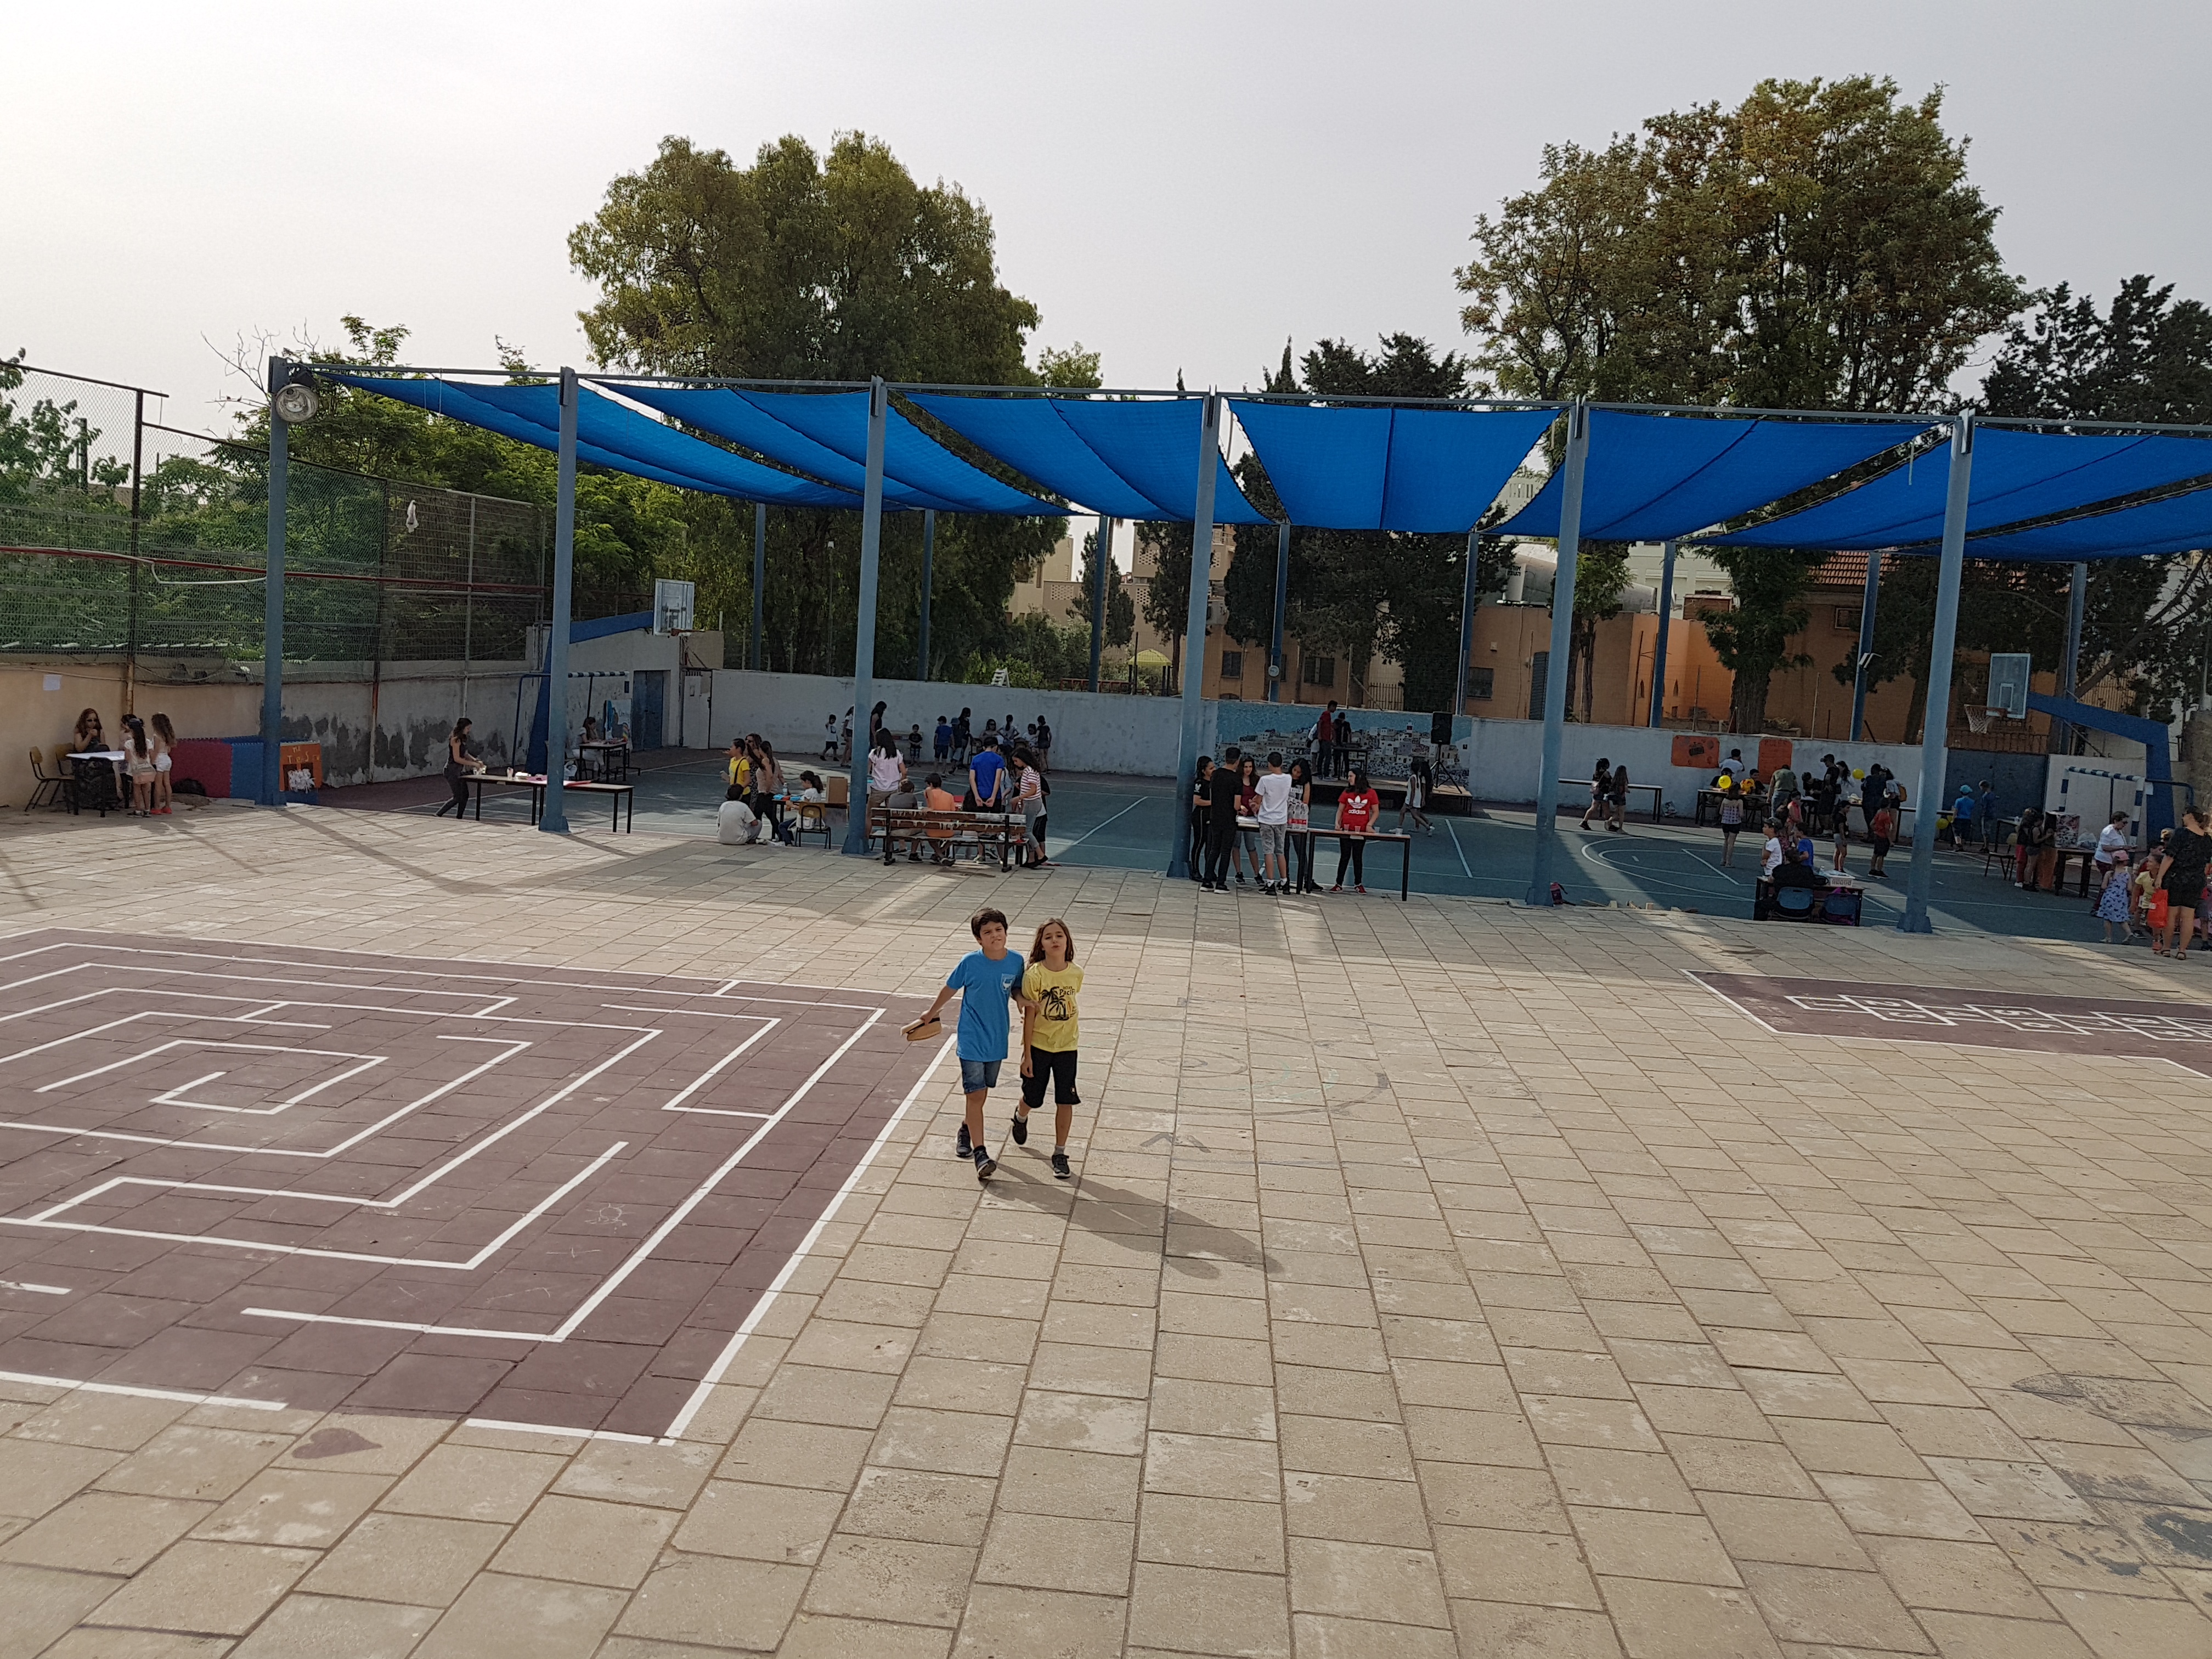 Children in Tabeetha's playground